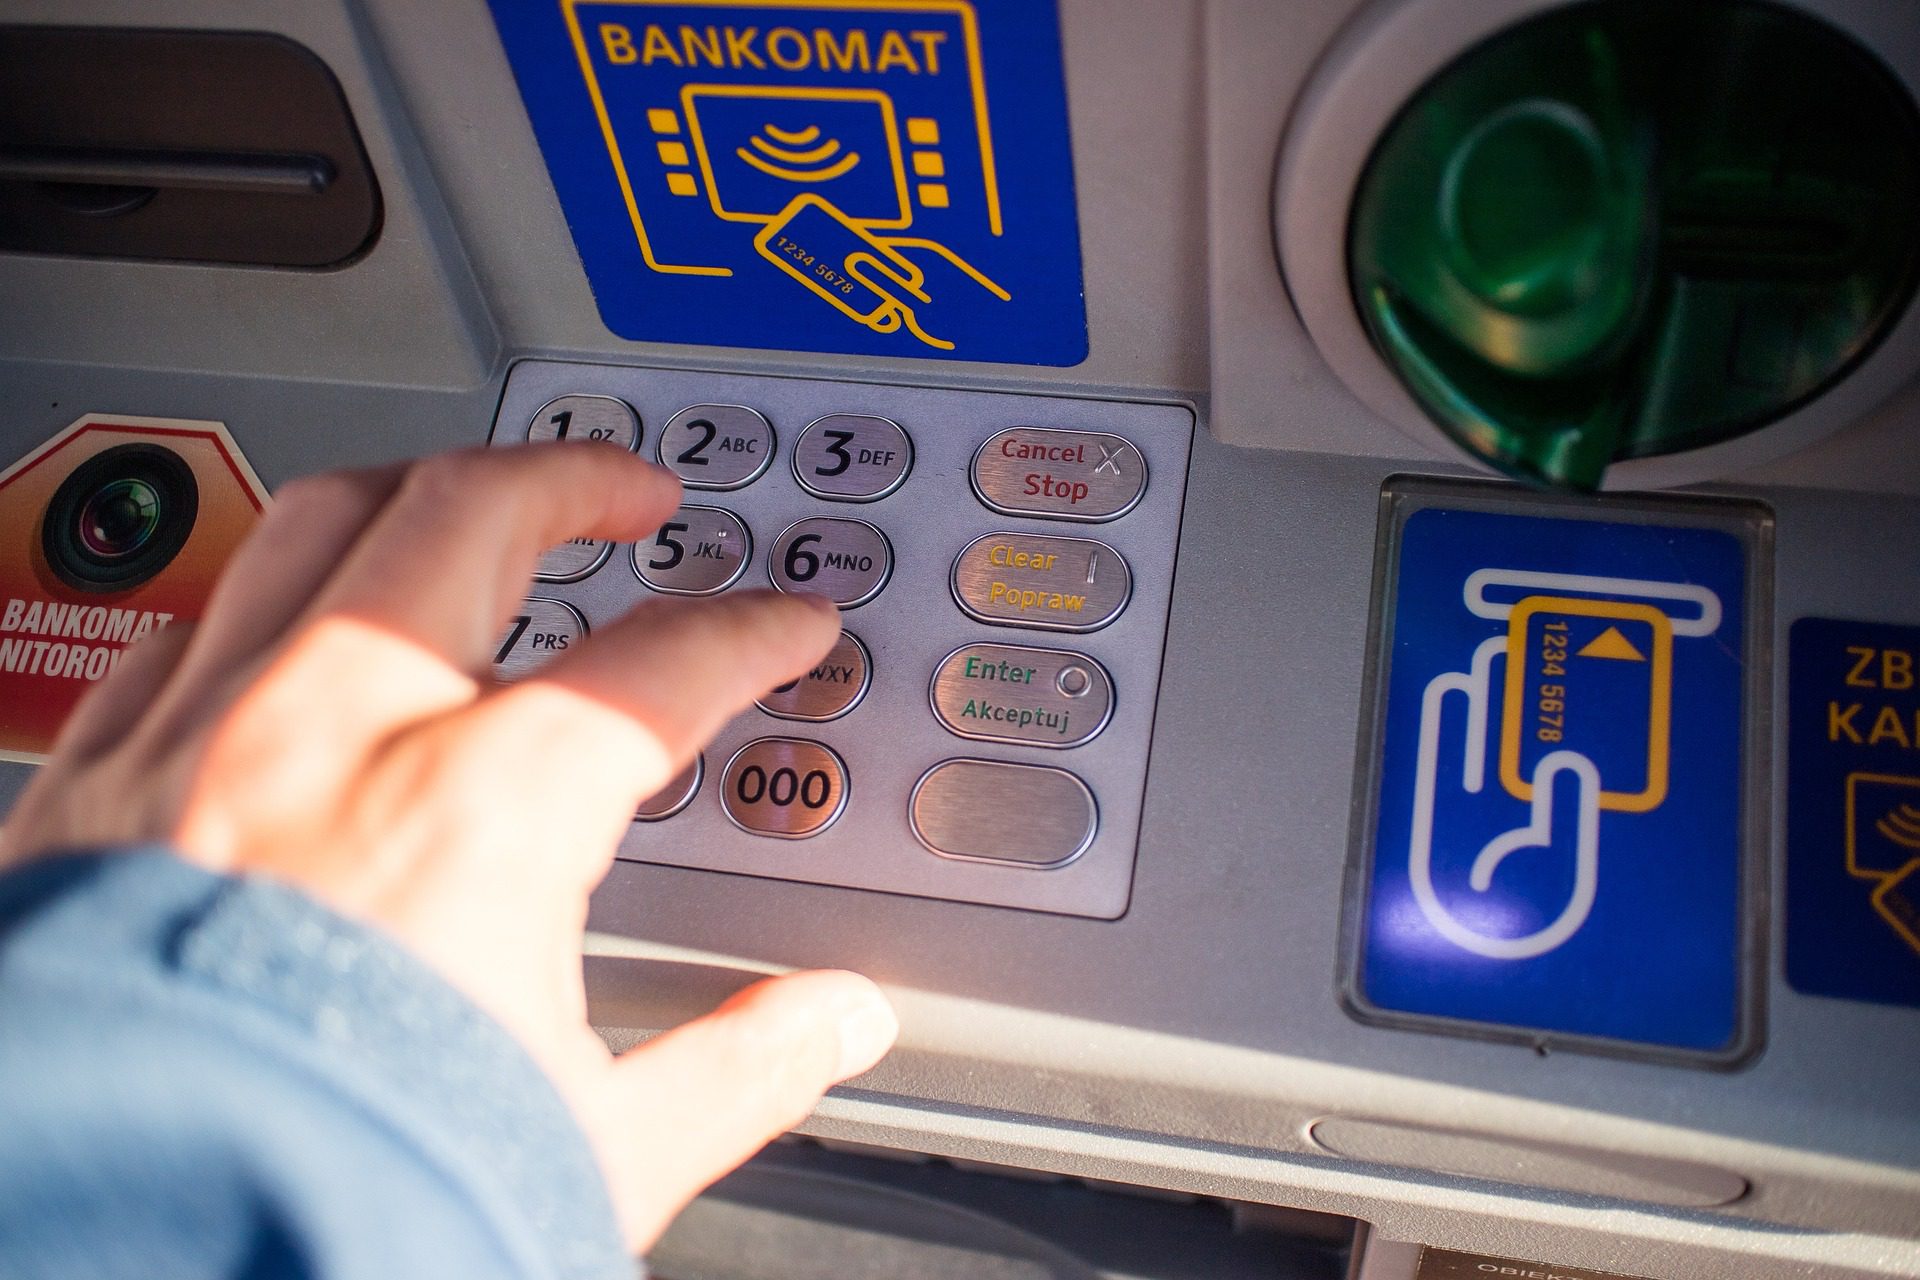 Ukraińcy mogą wypłacać gotówkę bez limitu w bankomacie? Fałsz